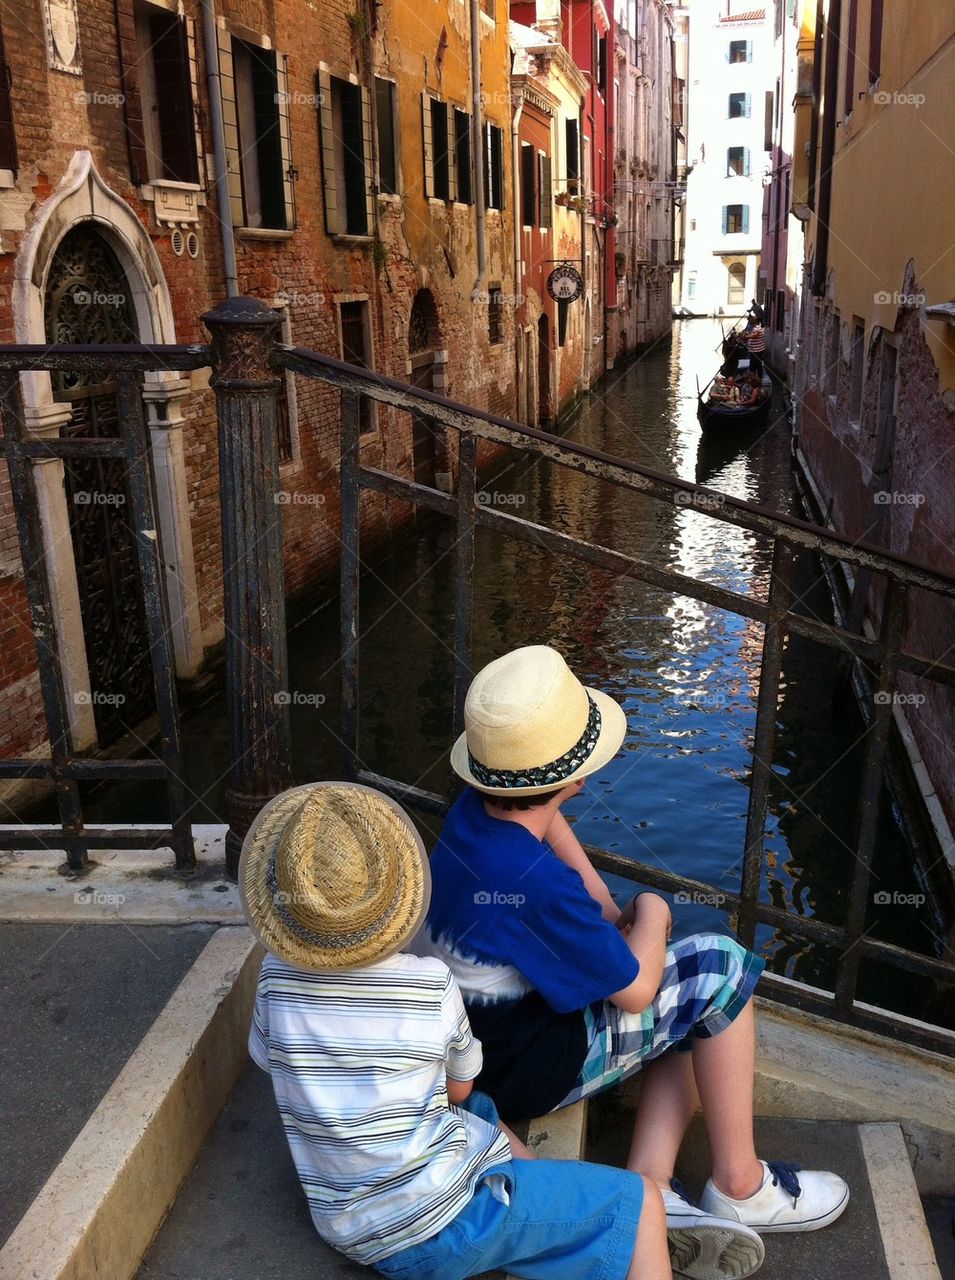 My Boys in Venice